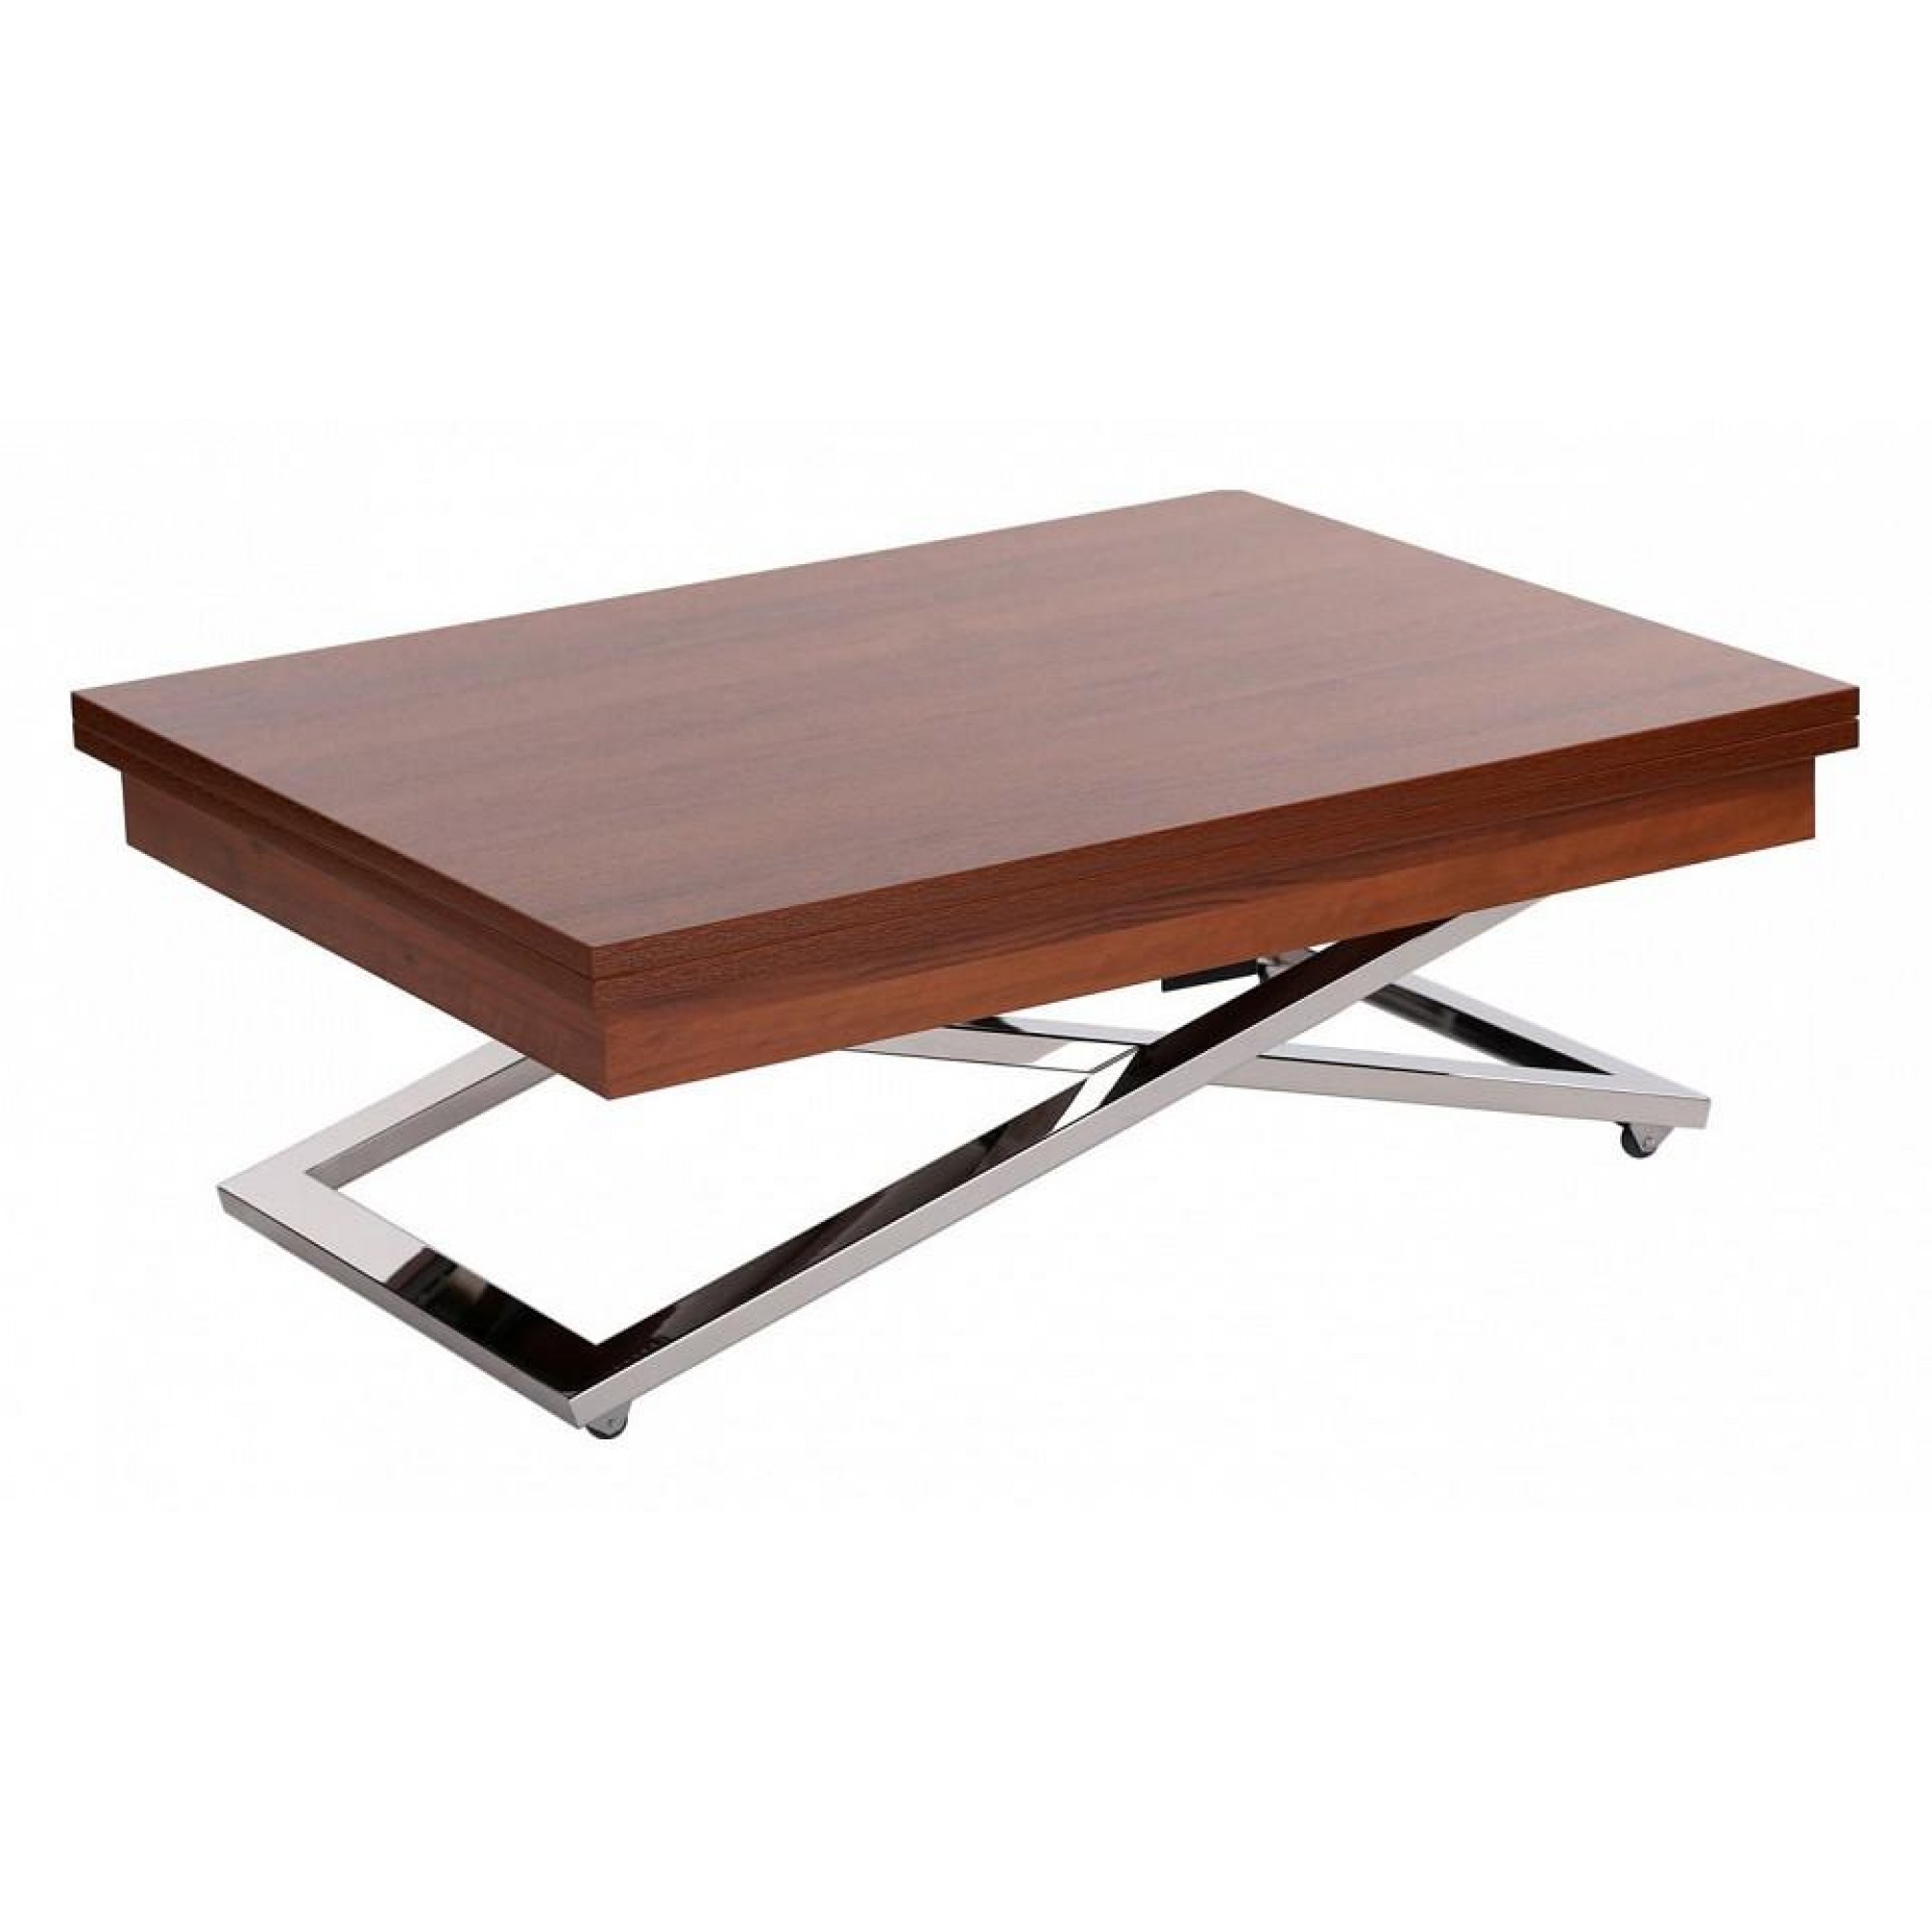 Стол обеденный Cross MW древесина коричневая нейтральная орех 1010, 2020x800x360-760(LEV_s7458924517)